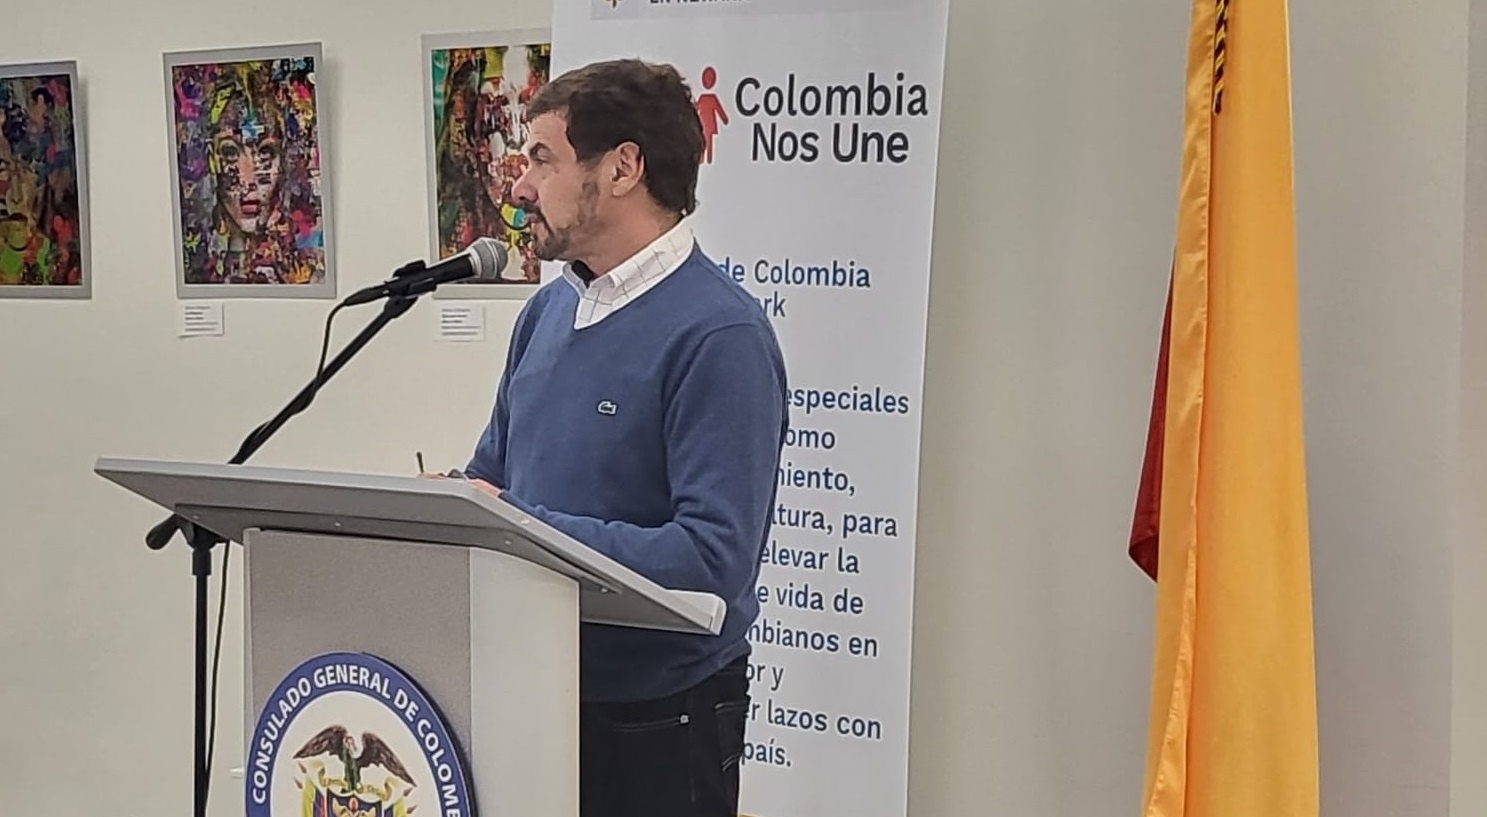 Consulado de Colombia en Newark realizó con éxito la VI exposición artística denominada "Reflexiones"